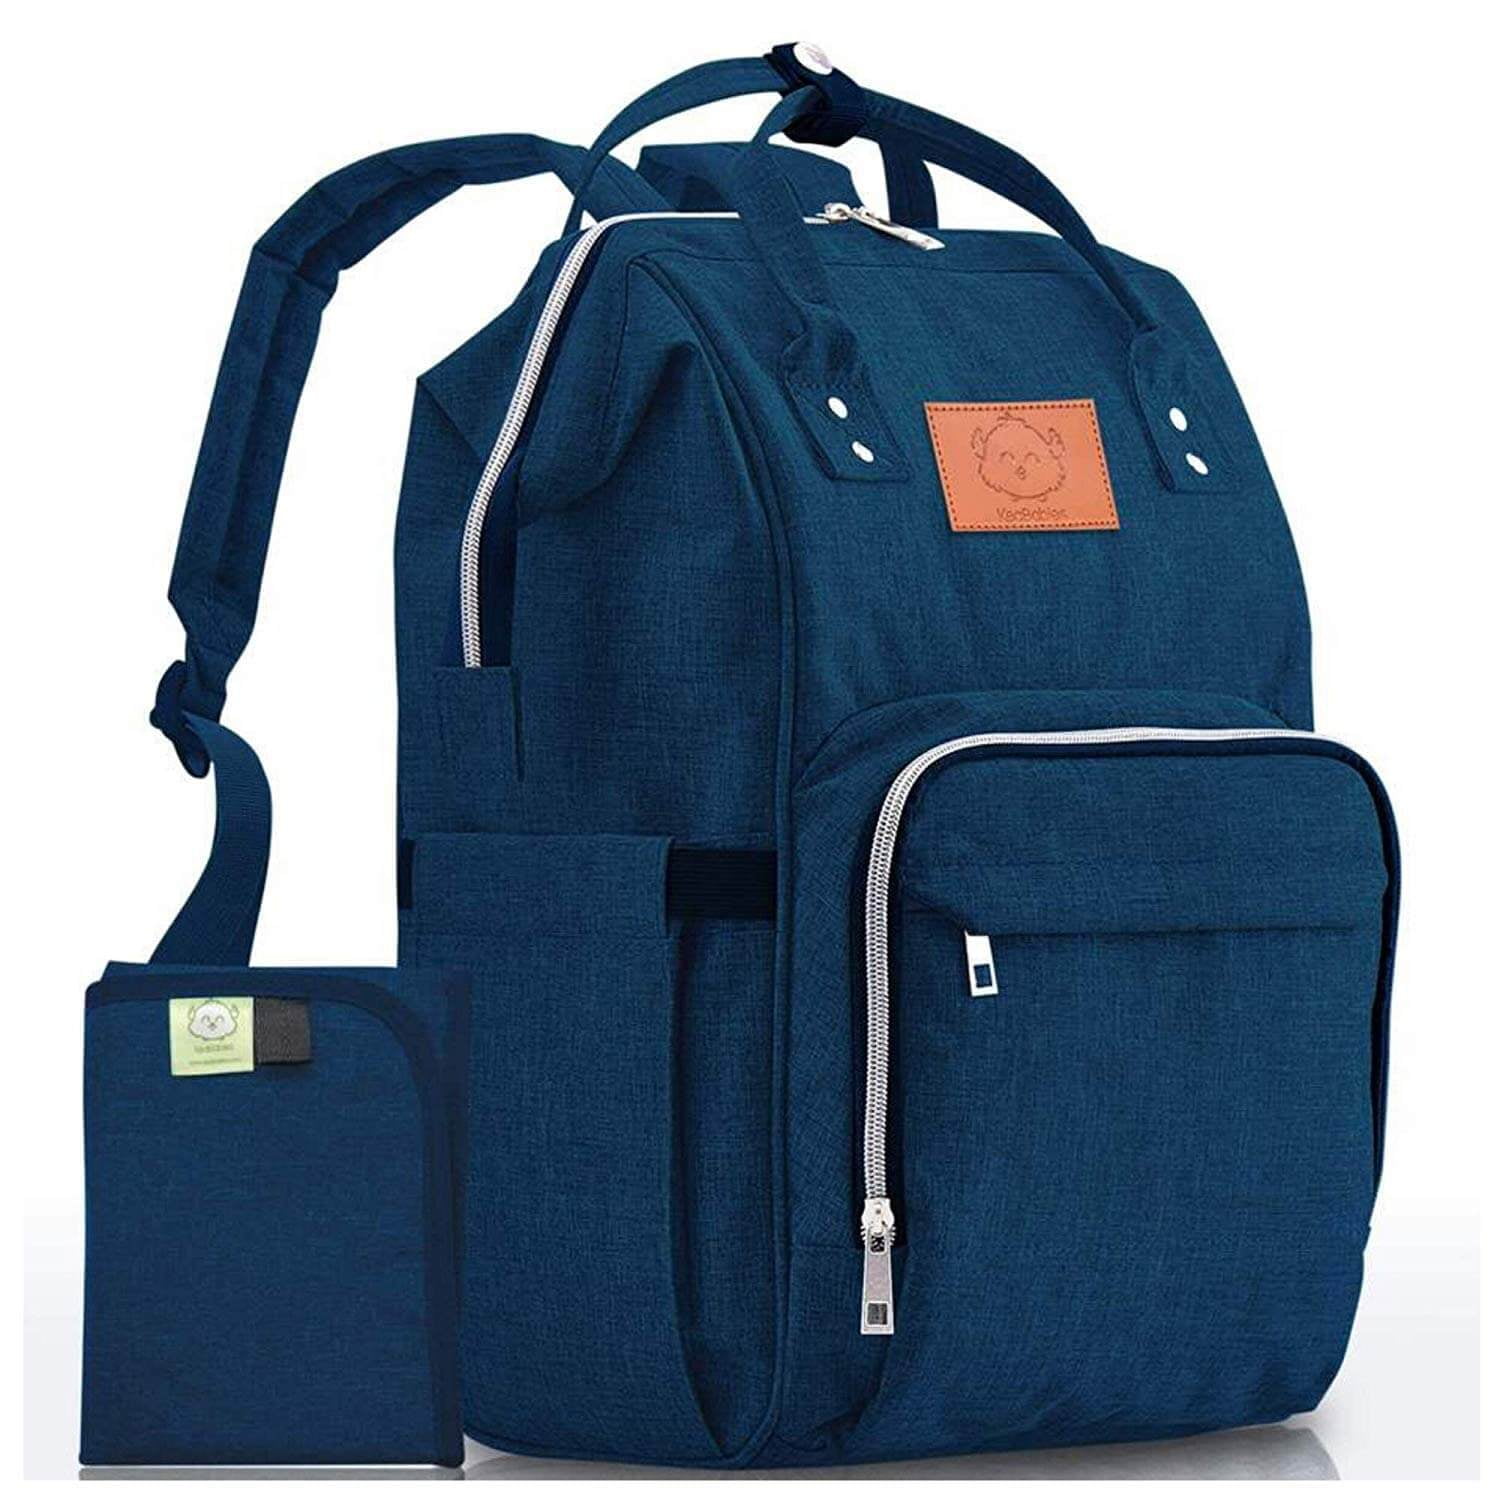 Diaper Bag Backpack Large Multi Function Waterproof Travel Baby